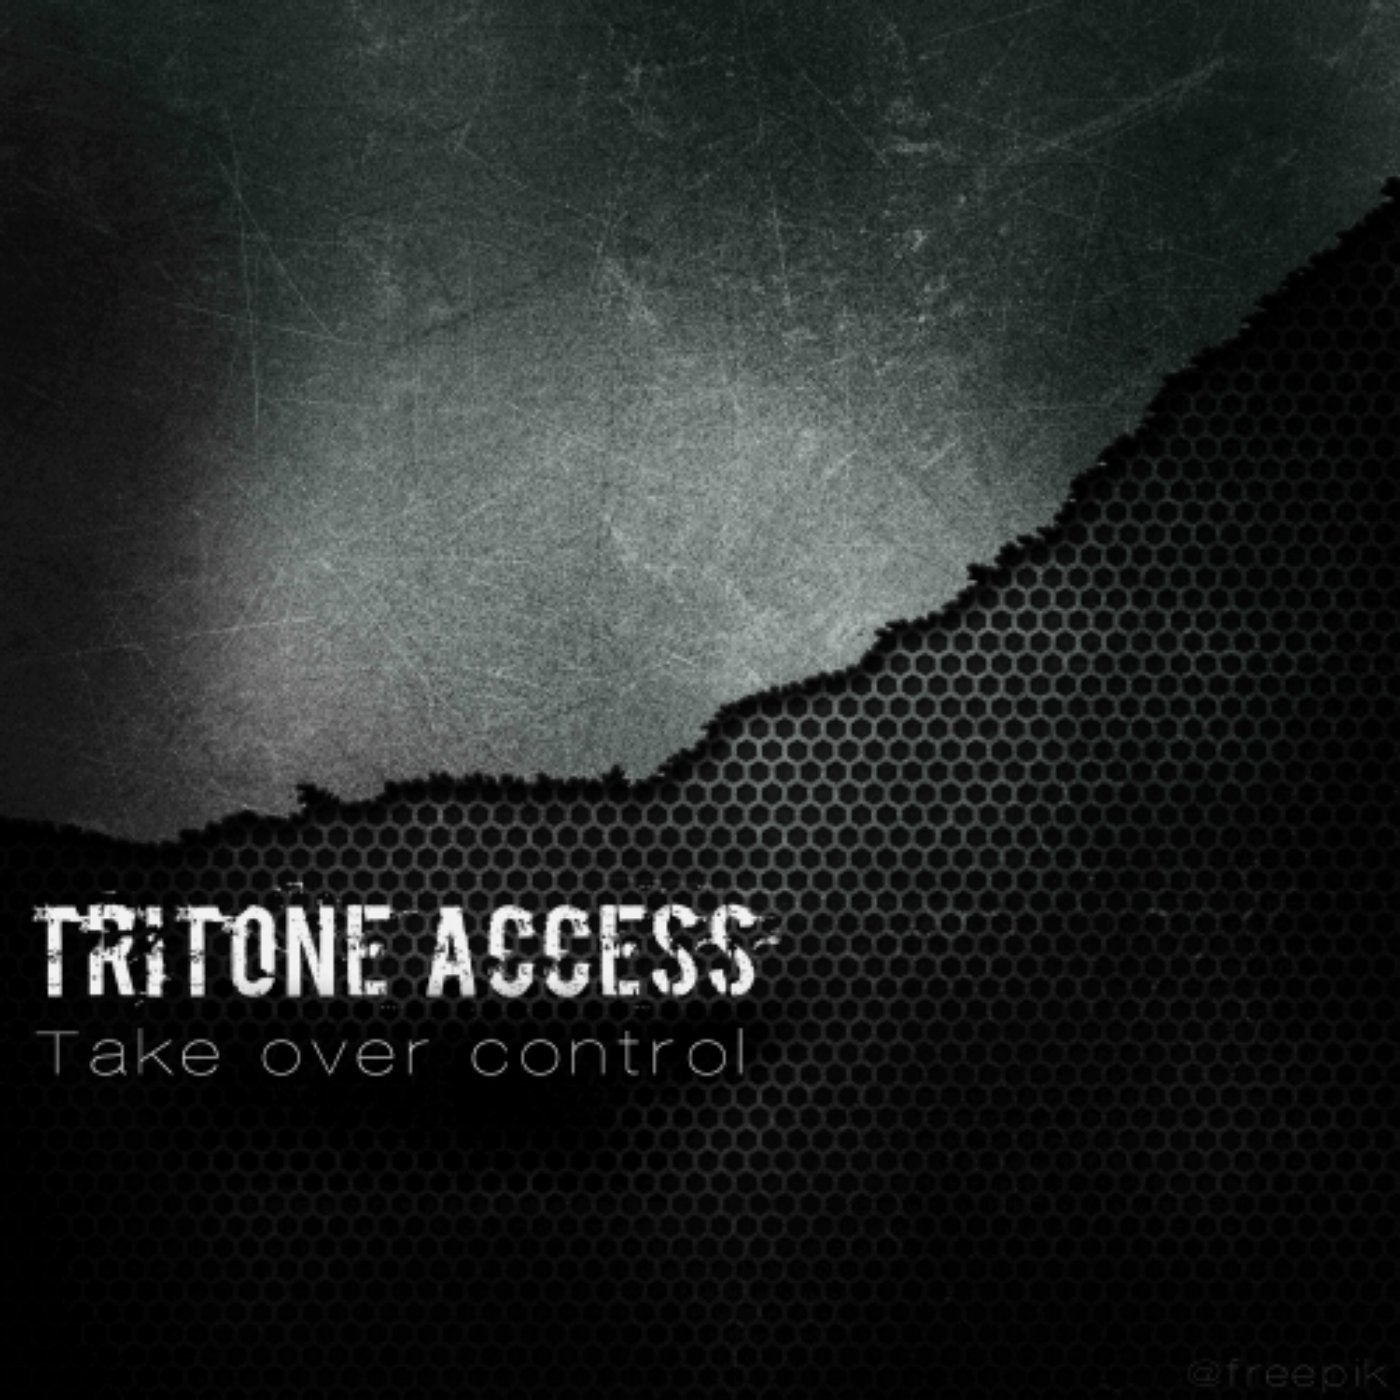 Take over control (Original Mix)